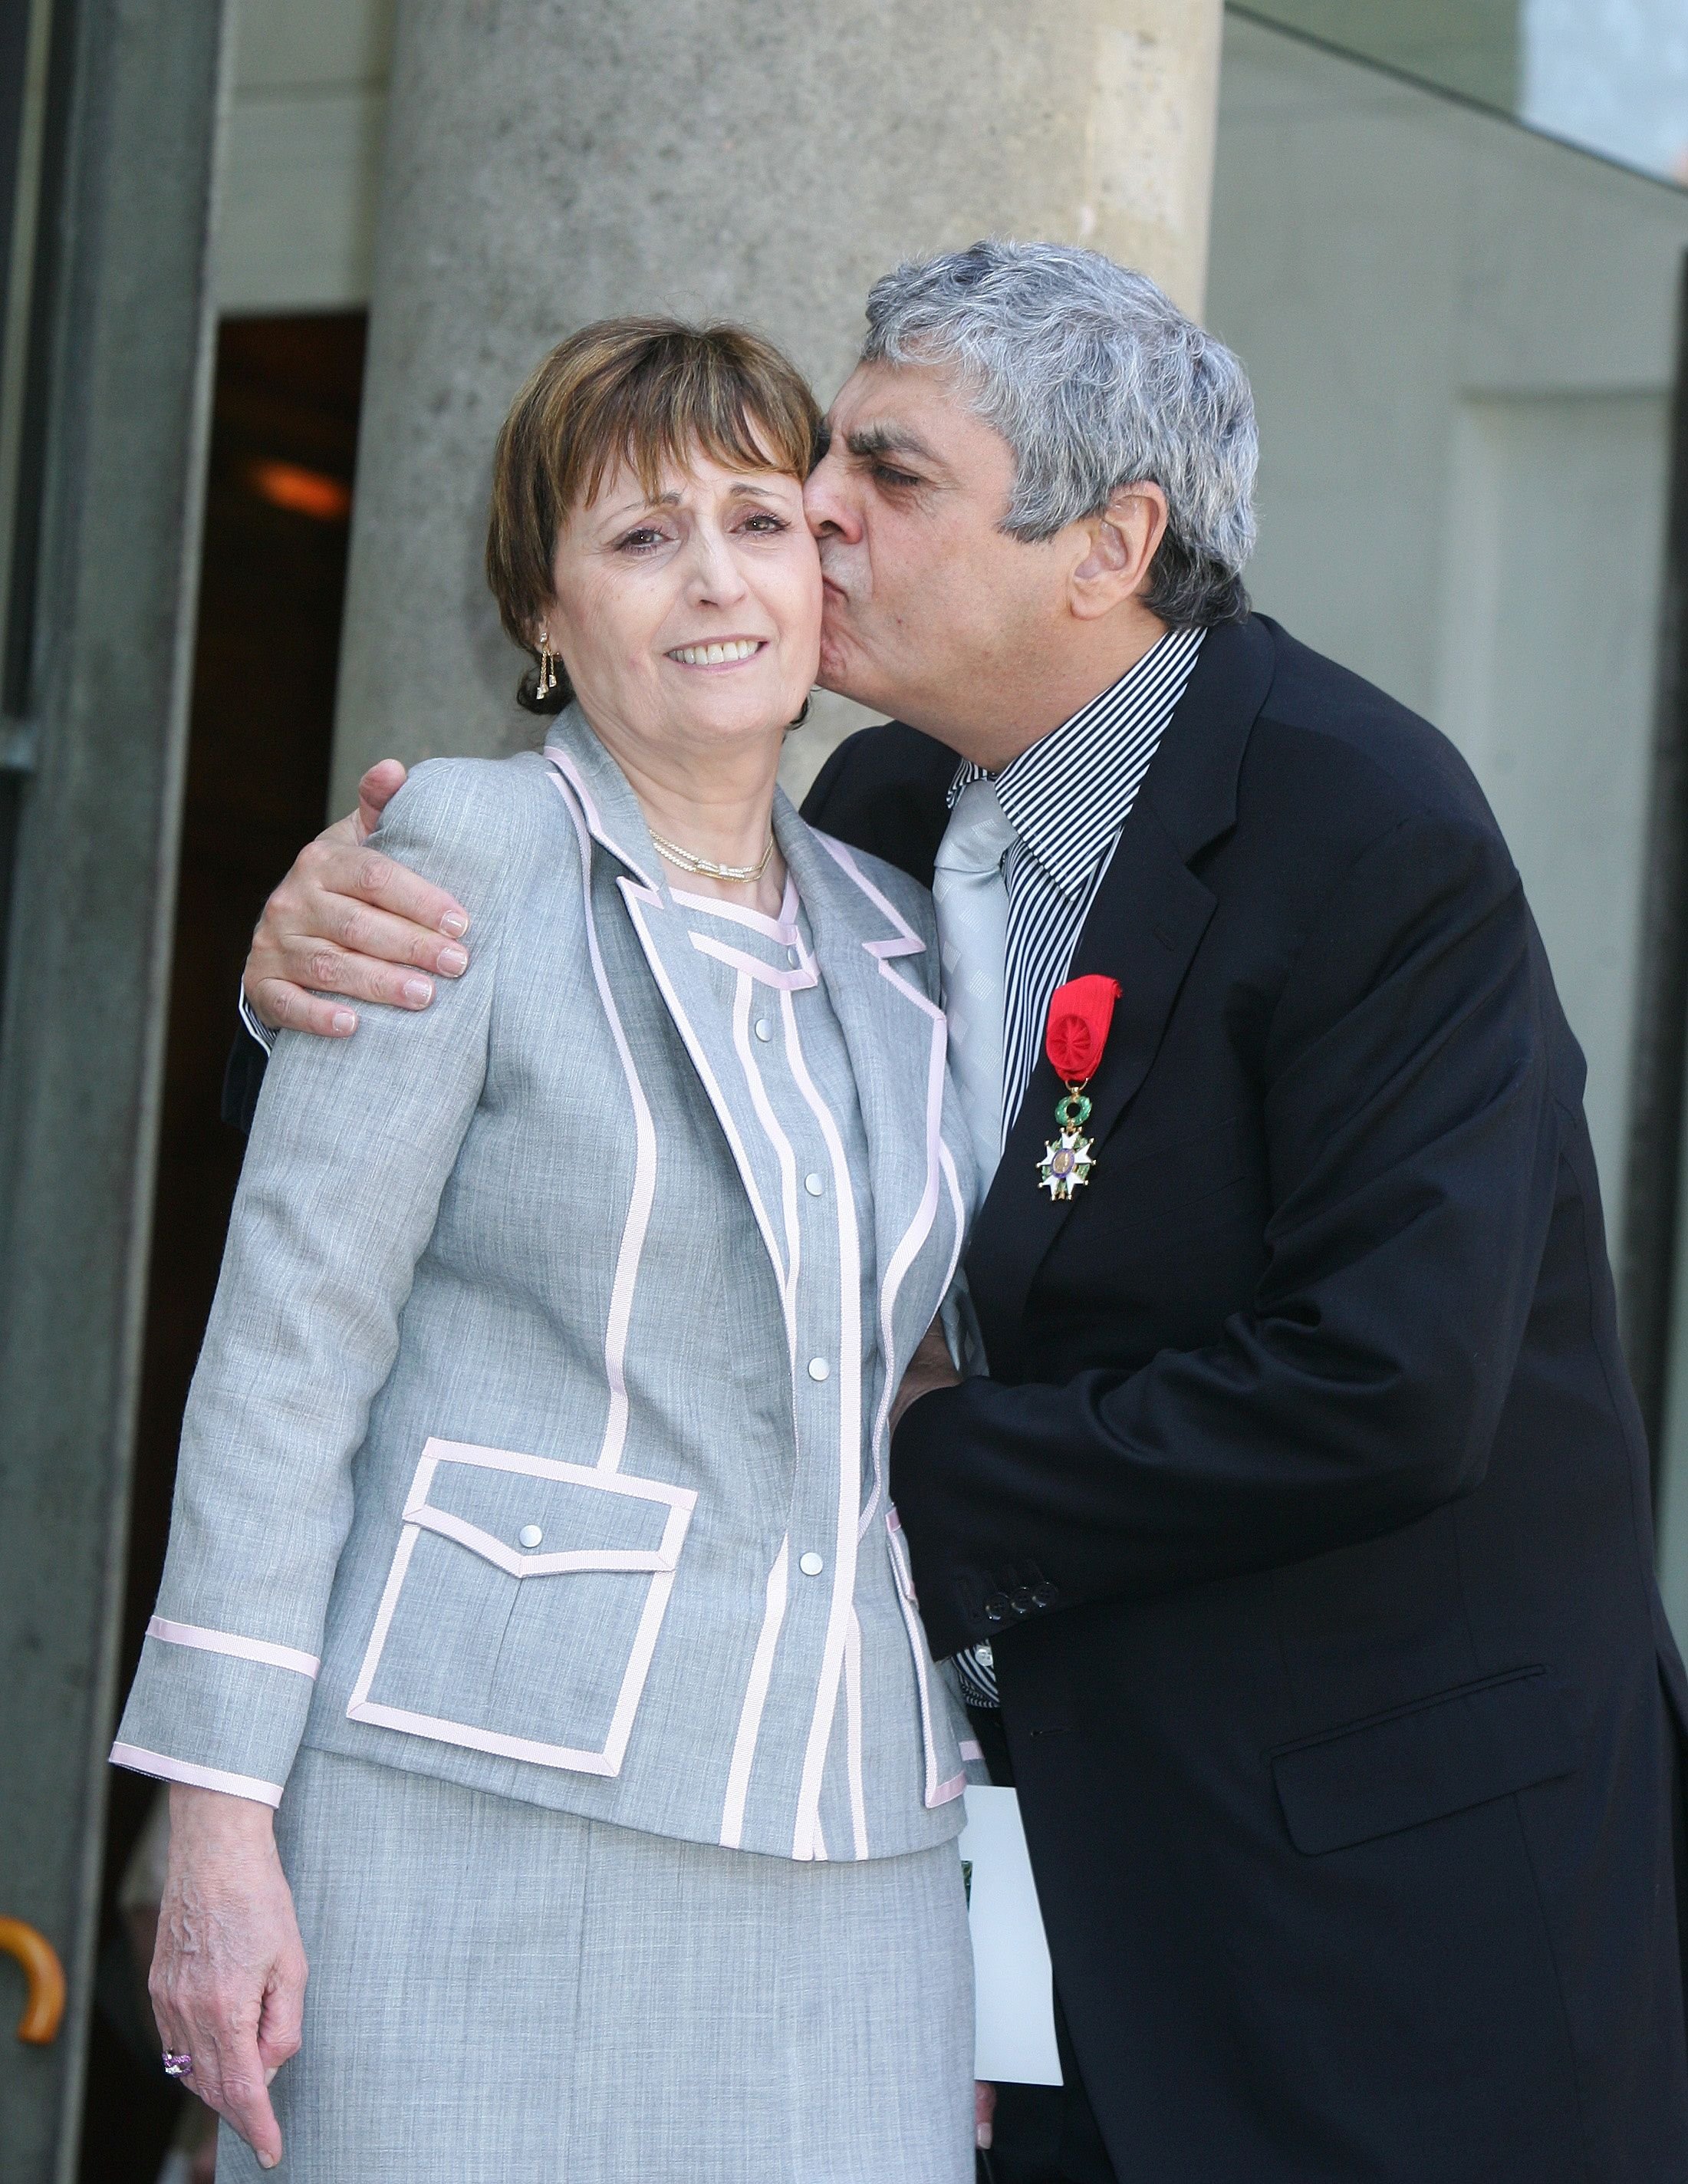 Enrico Macias et son épouse Suzy, au Palais de l'Elysée à Paris, France le 03 mai 2007. | Photo : Getty Images